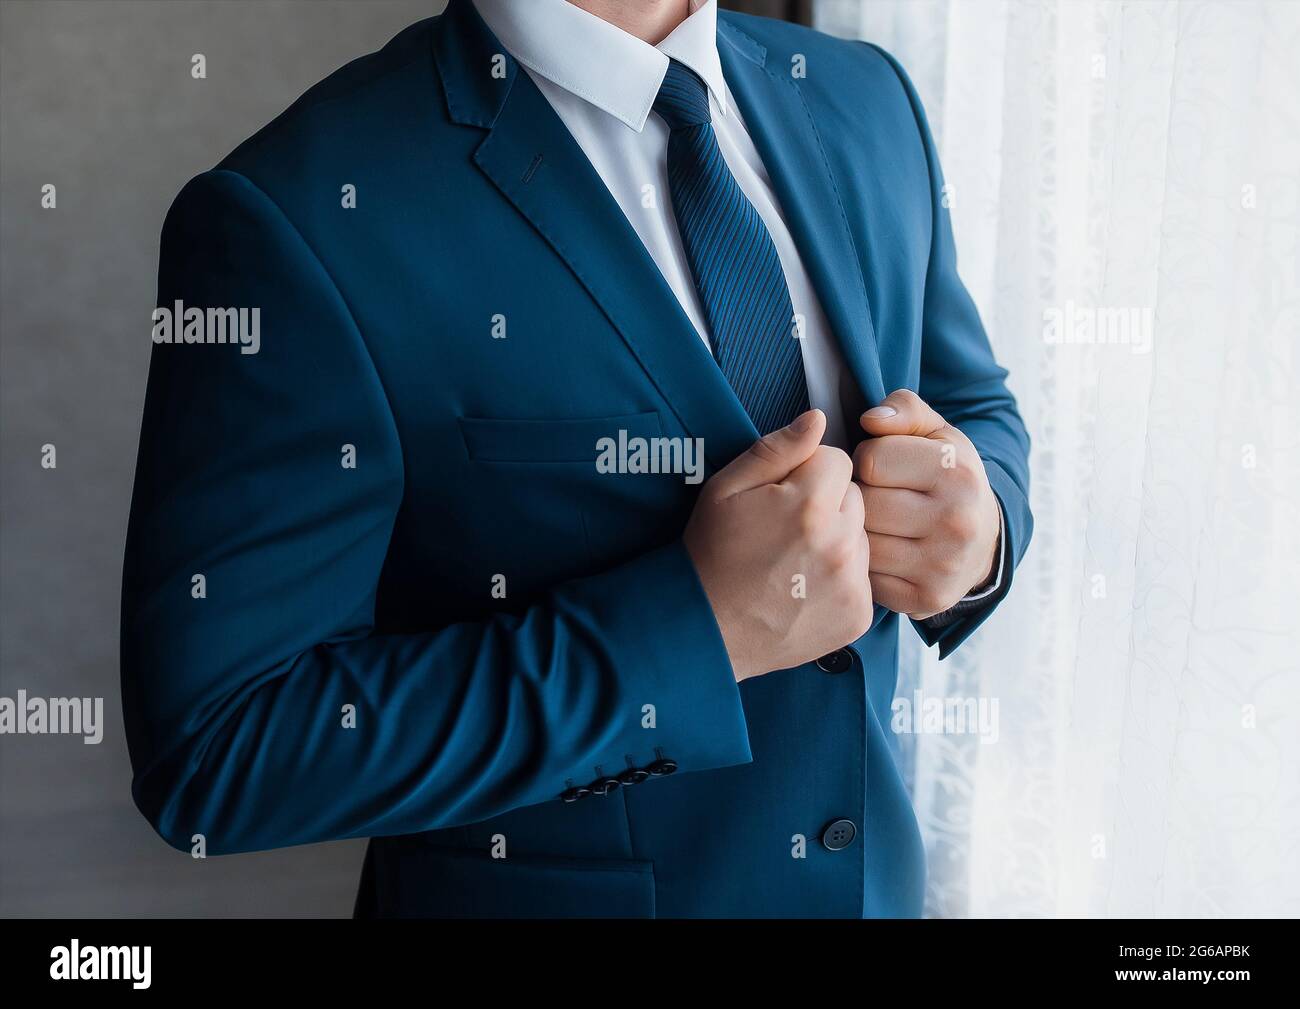 Camisa blanca formal y ropa de traje azul fotografías e imágenes de alta resolución Alamy